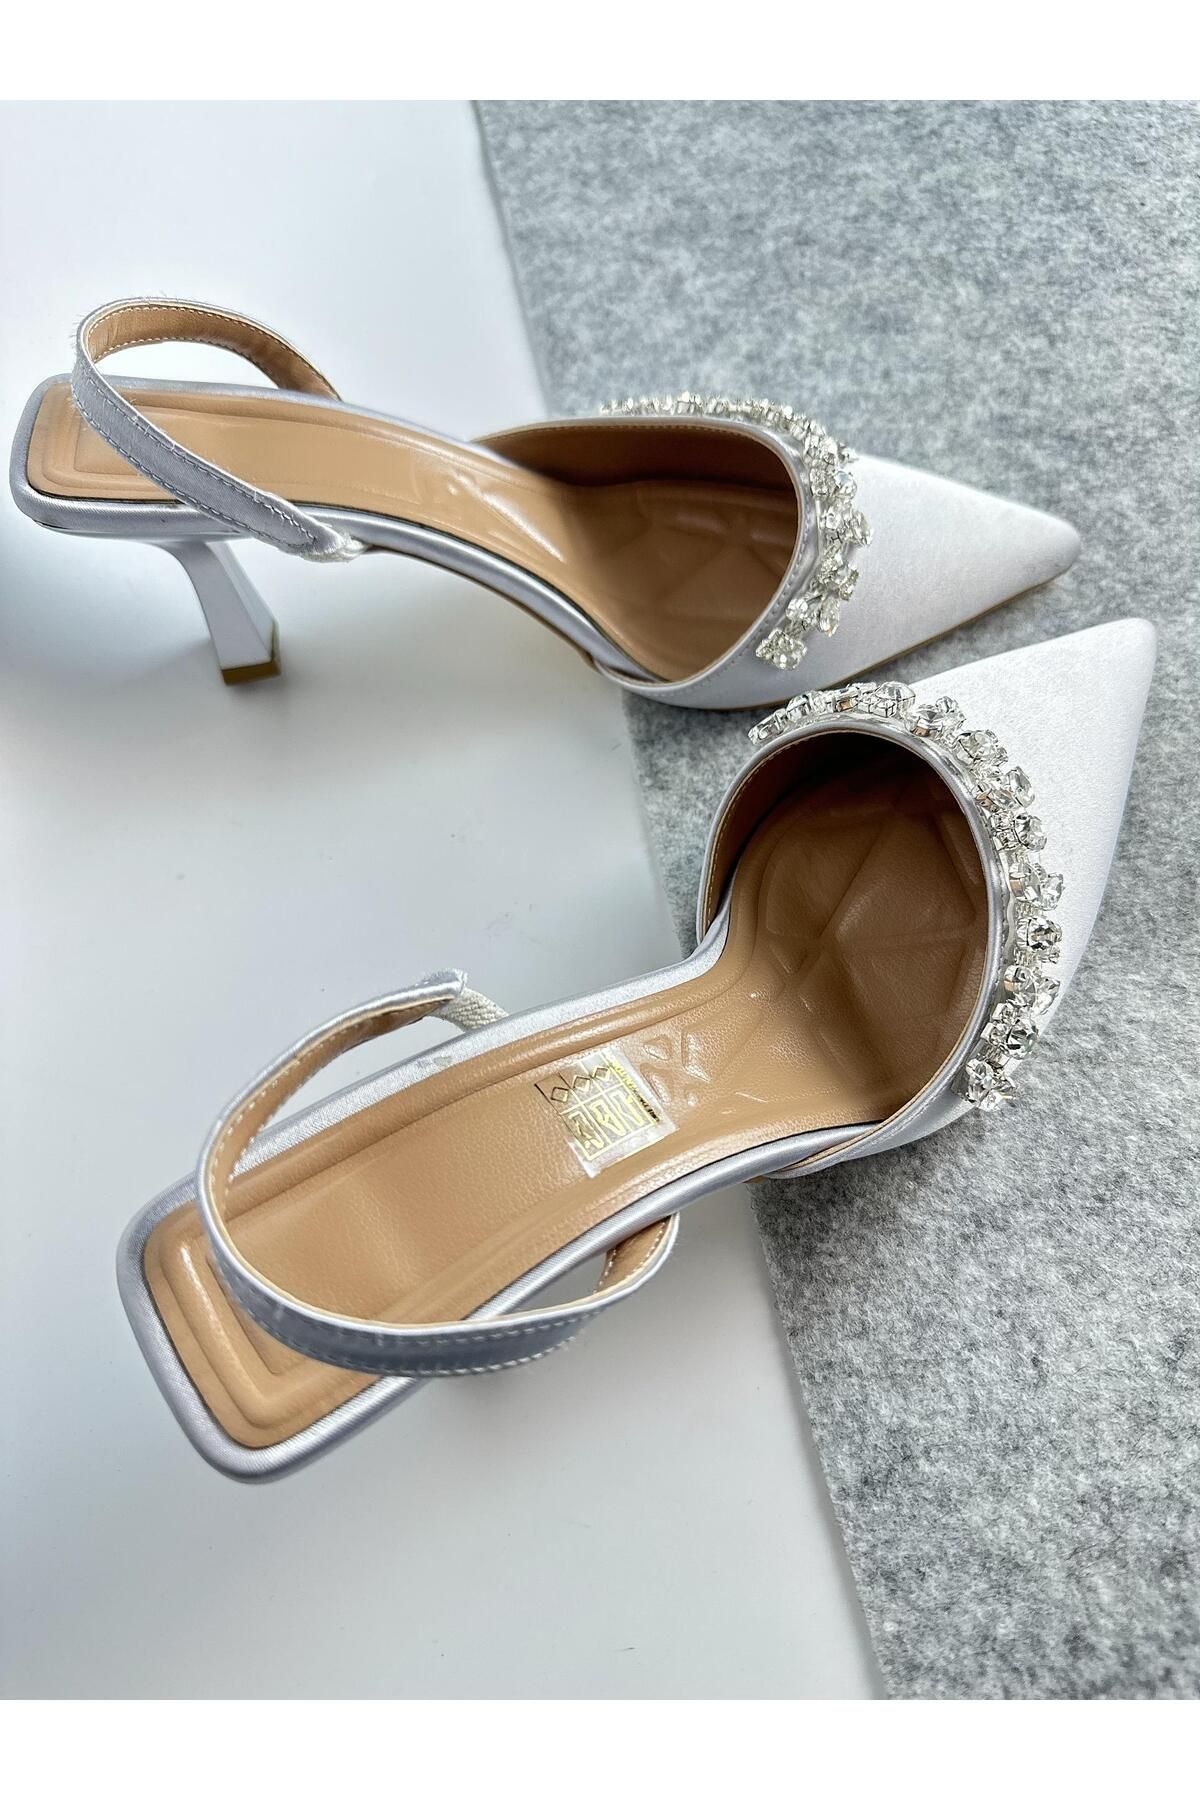 Gloriys Ayakkabı & Çanta Gümüş saten 6 cm topuklu taşlı ayakkabı 0560